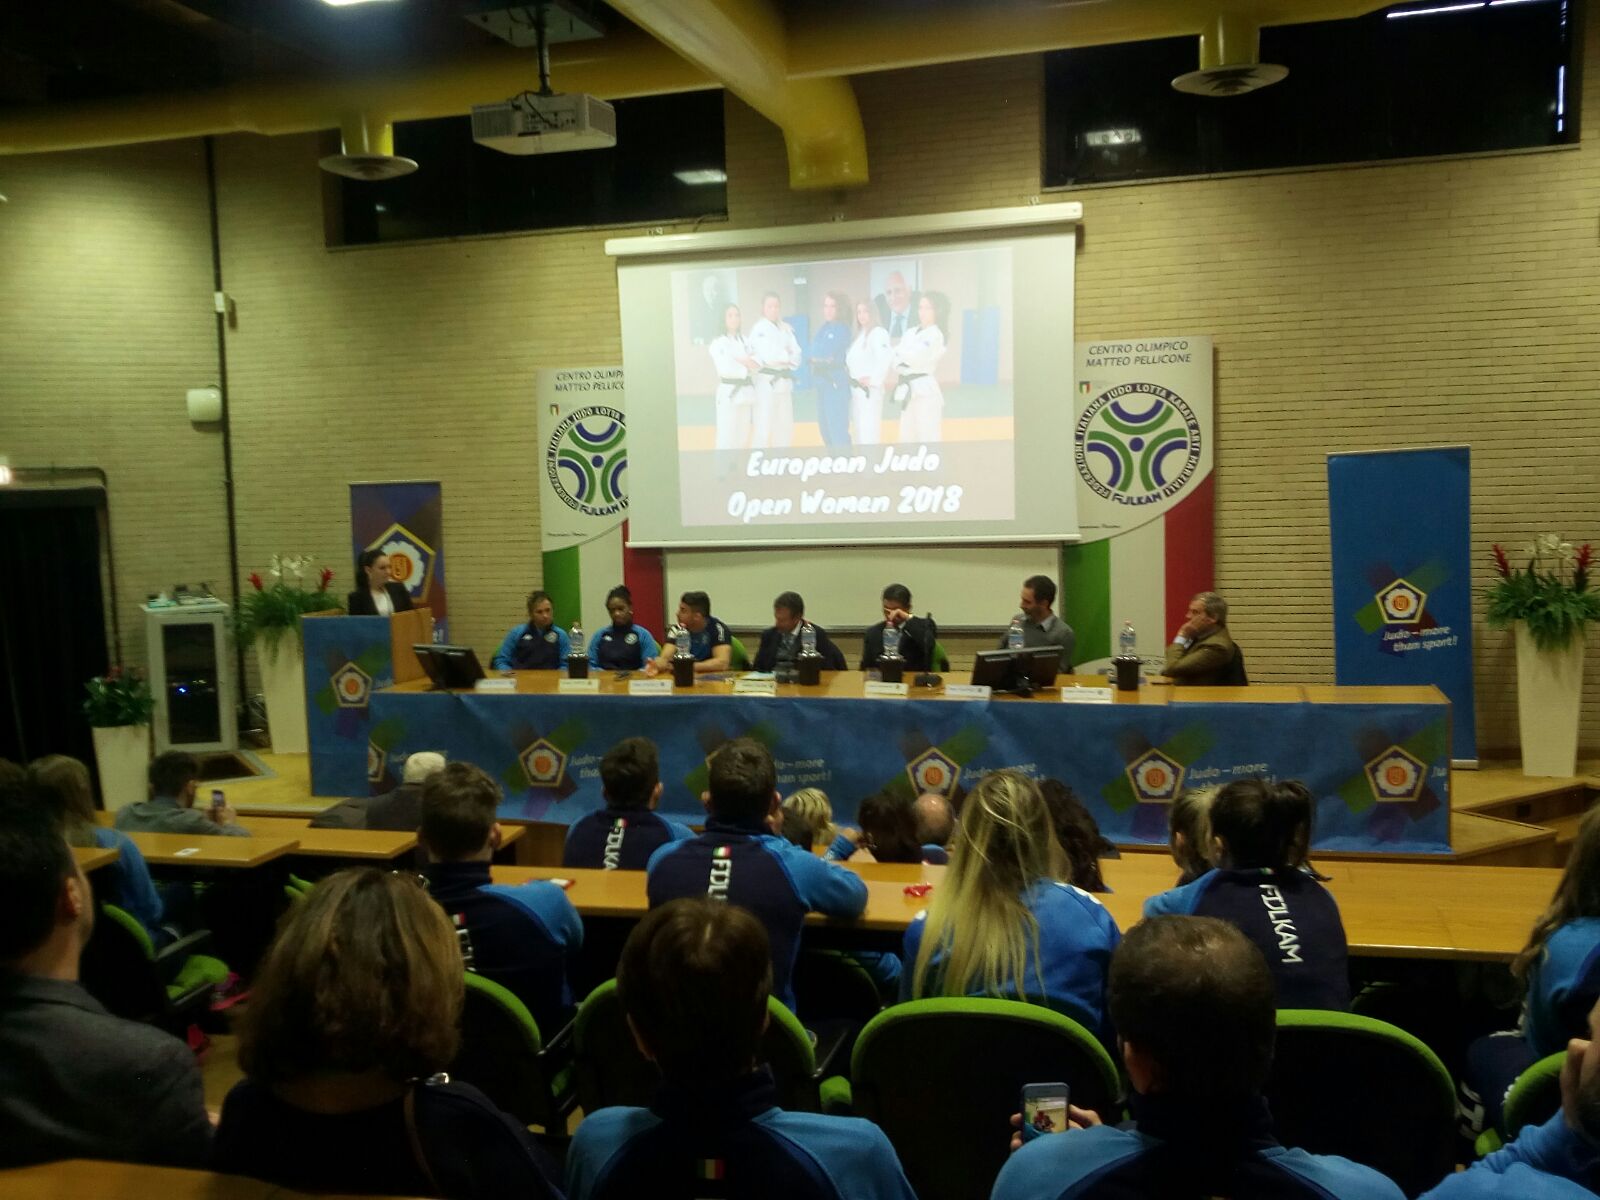 Presentato in conferenza stampa l'European Open di Judo con Forciniti, Gwend e Basile